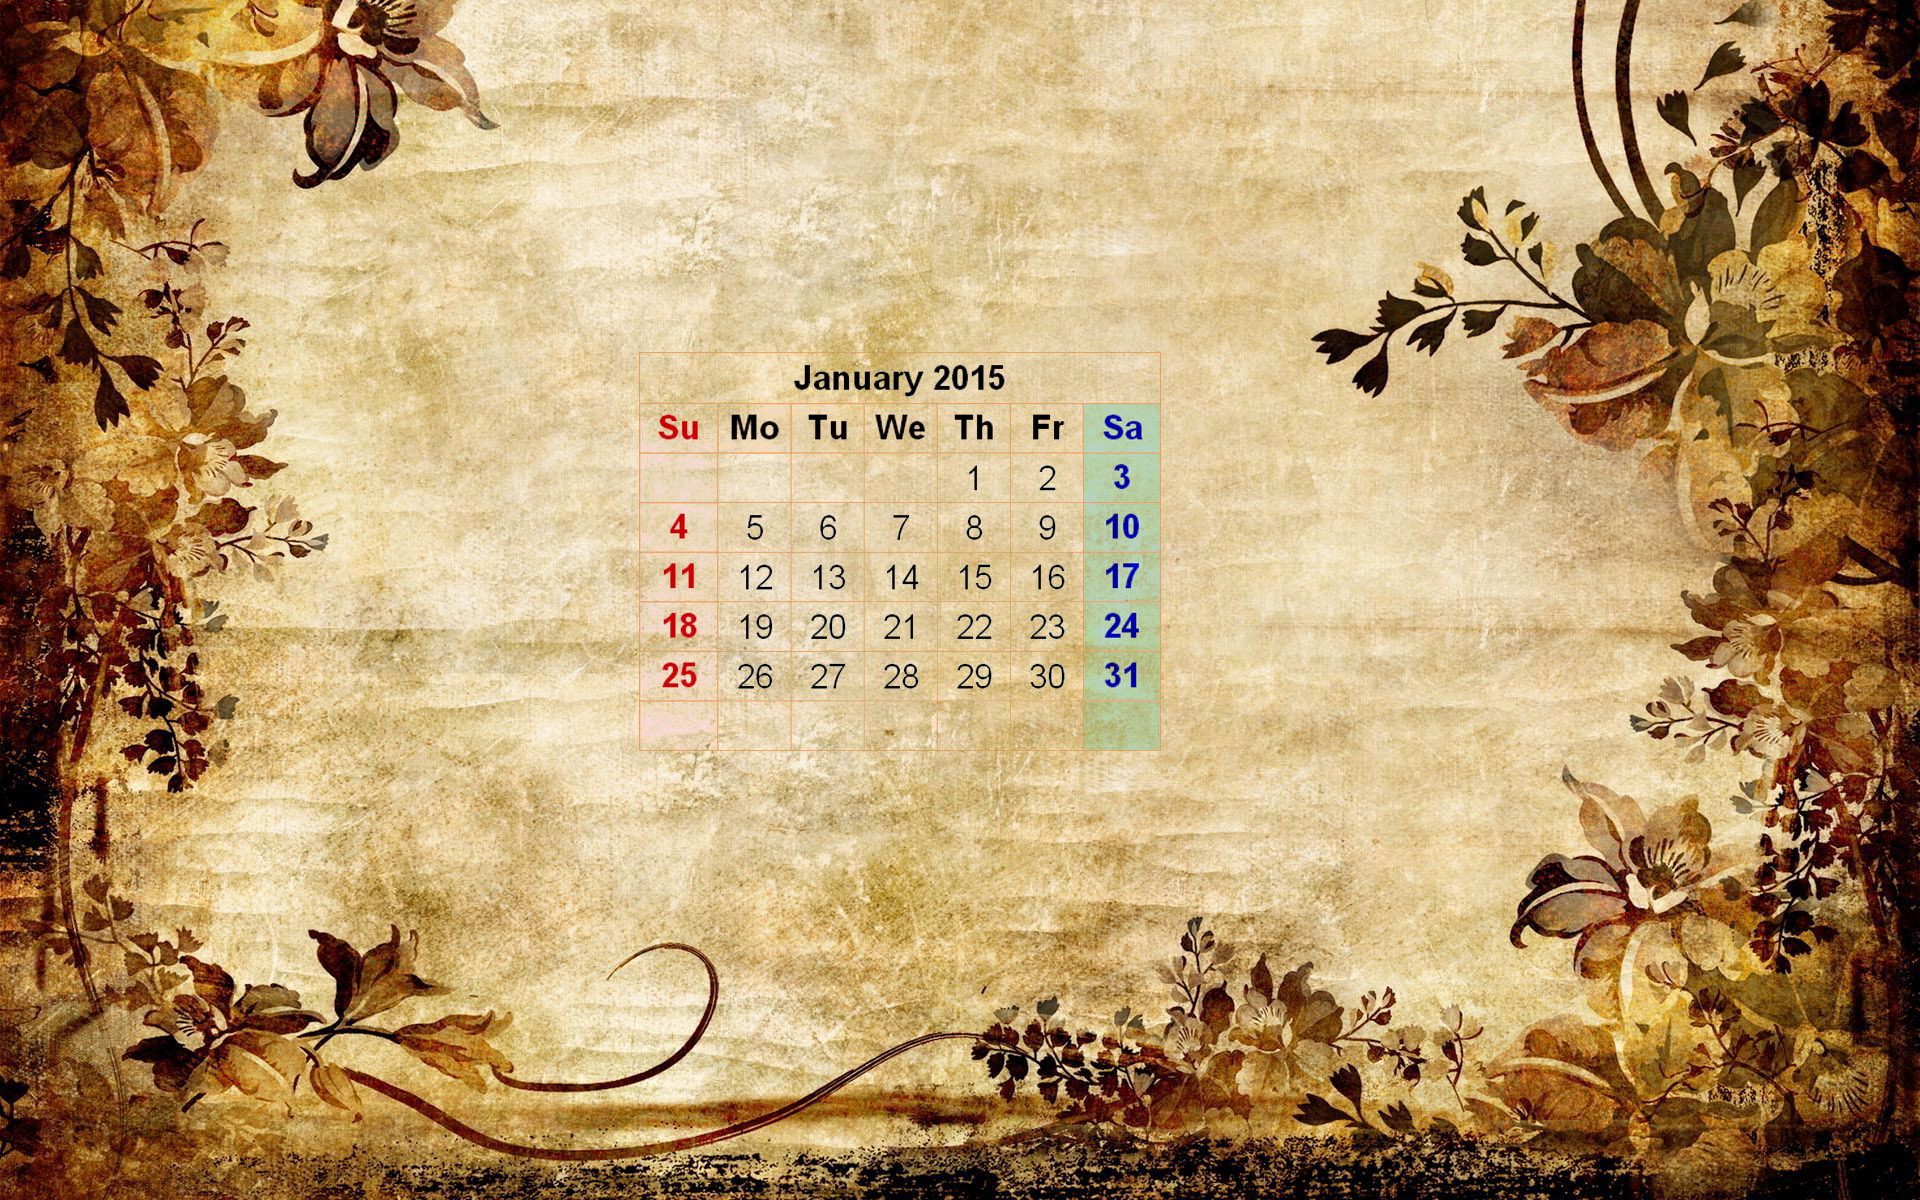 January 2015 Wallpaper Calendar New Calendar Template Site 1920x1200